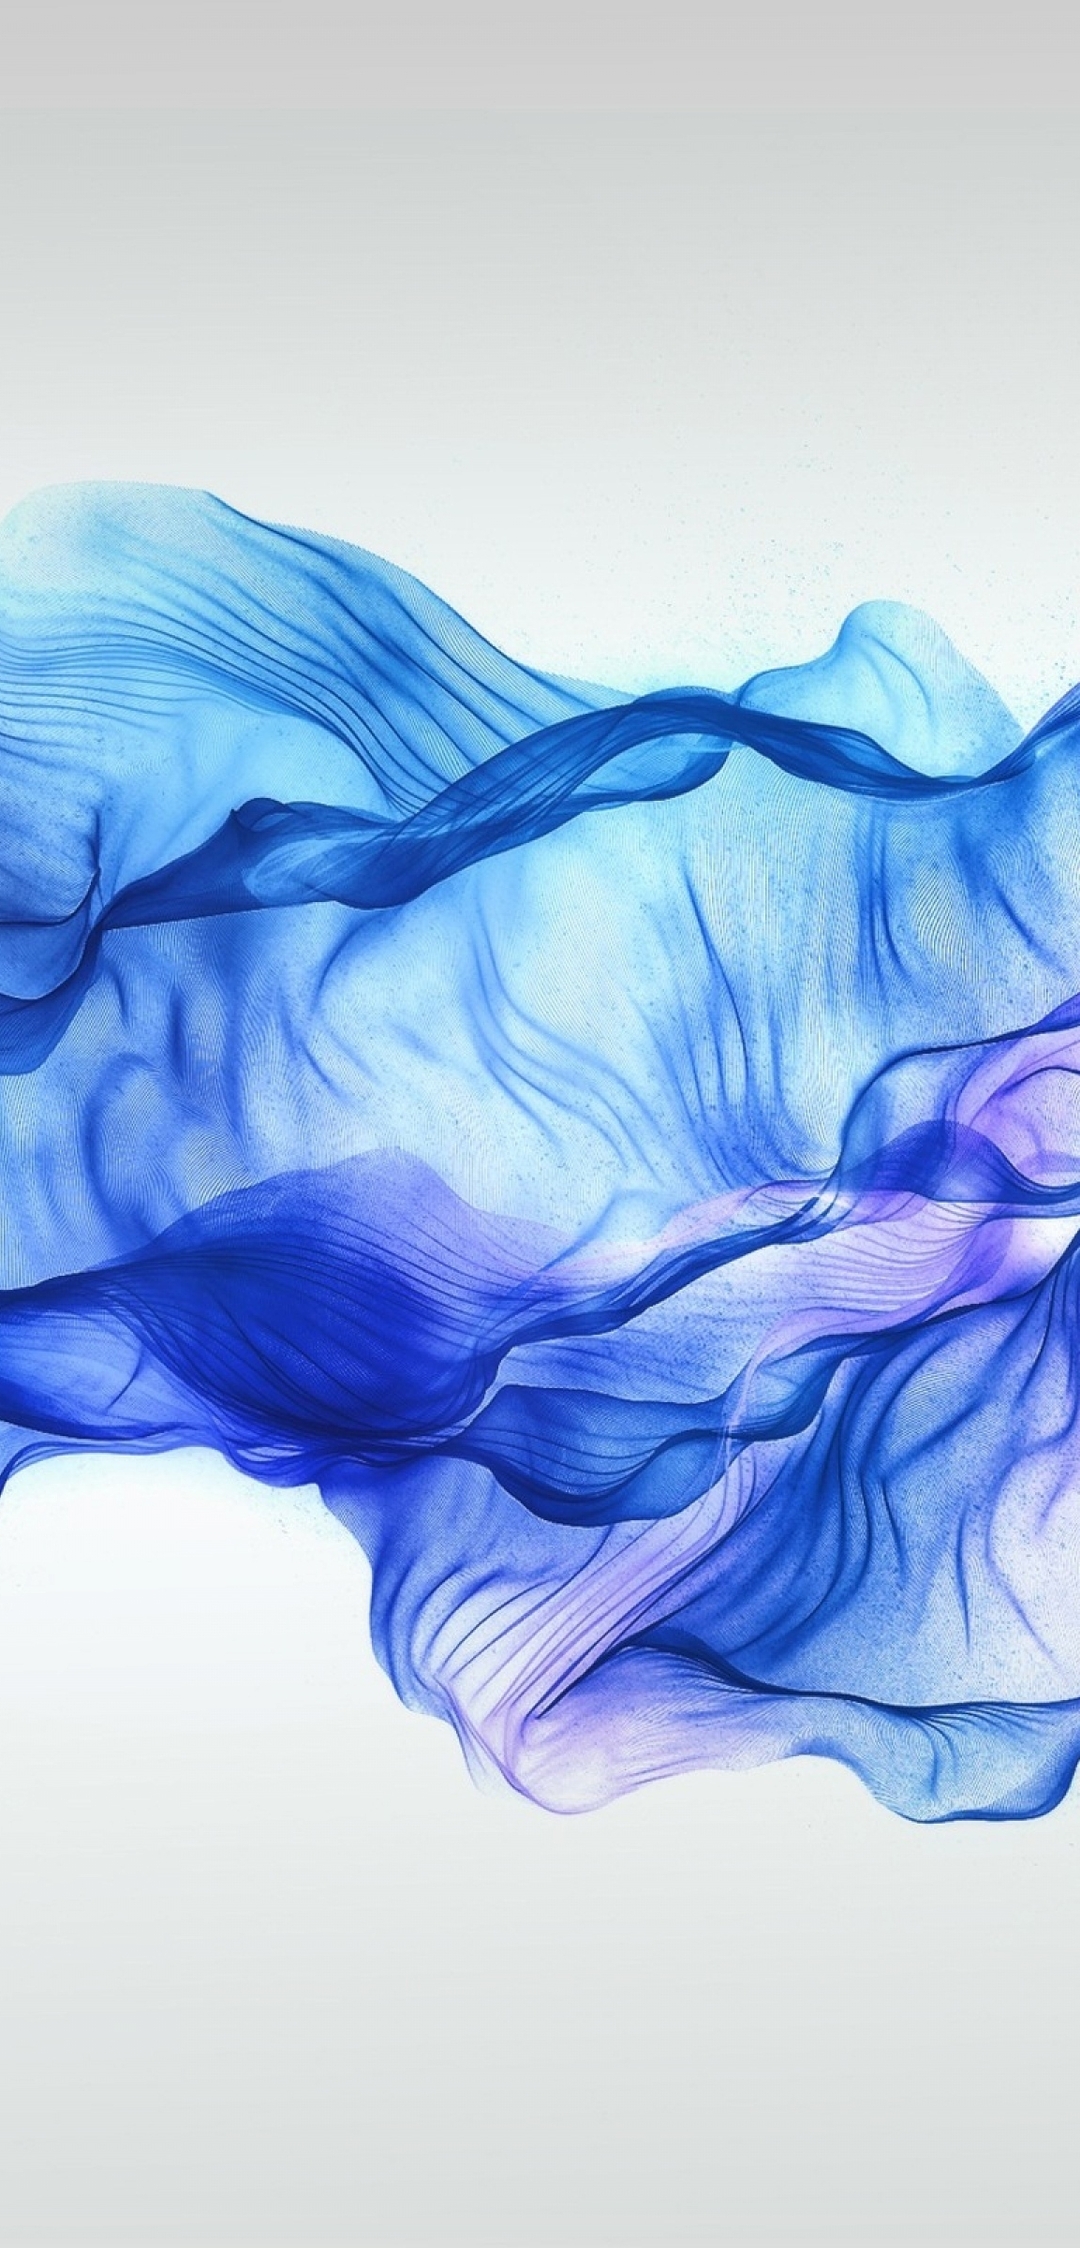 Image: Ribbon, fabric, blue, white background